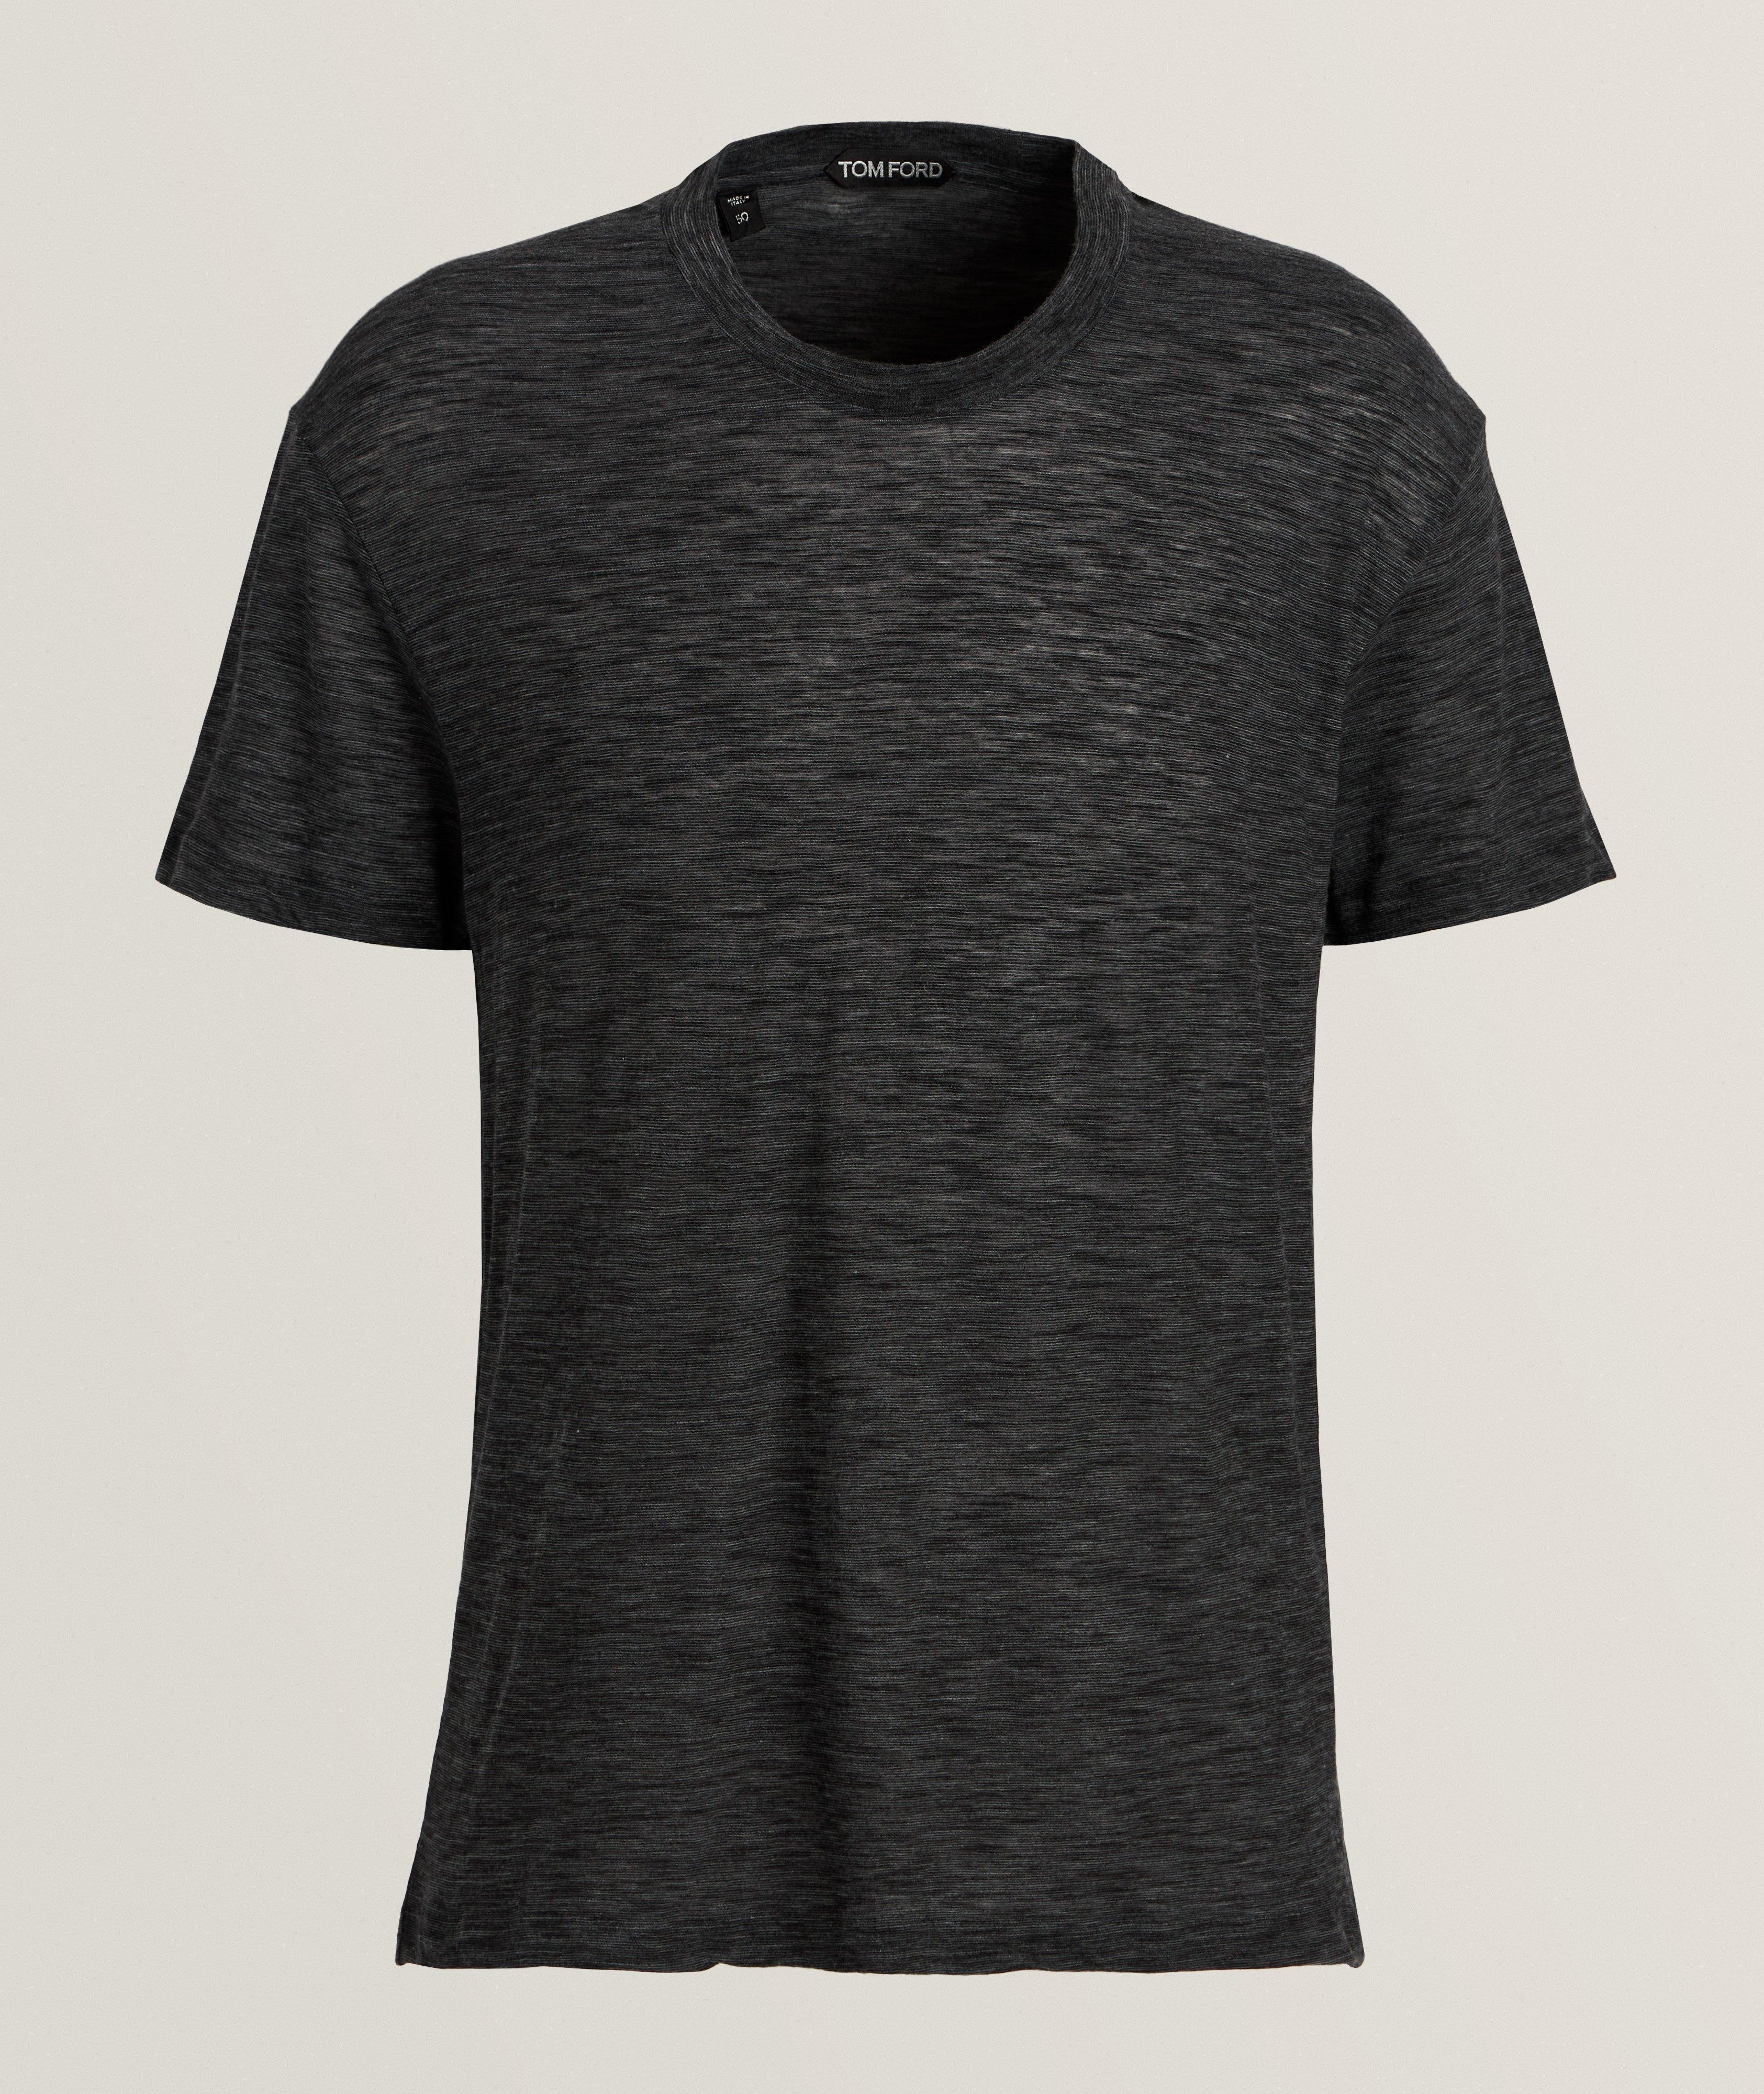 Mélange Cotton-Blend T-Shirt image 0